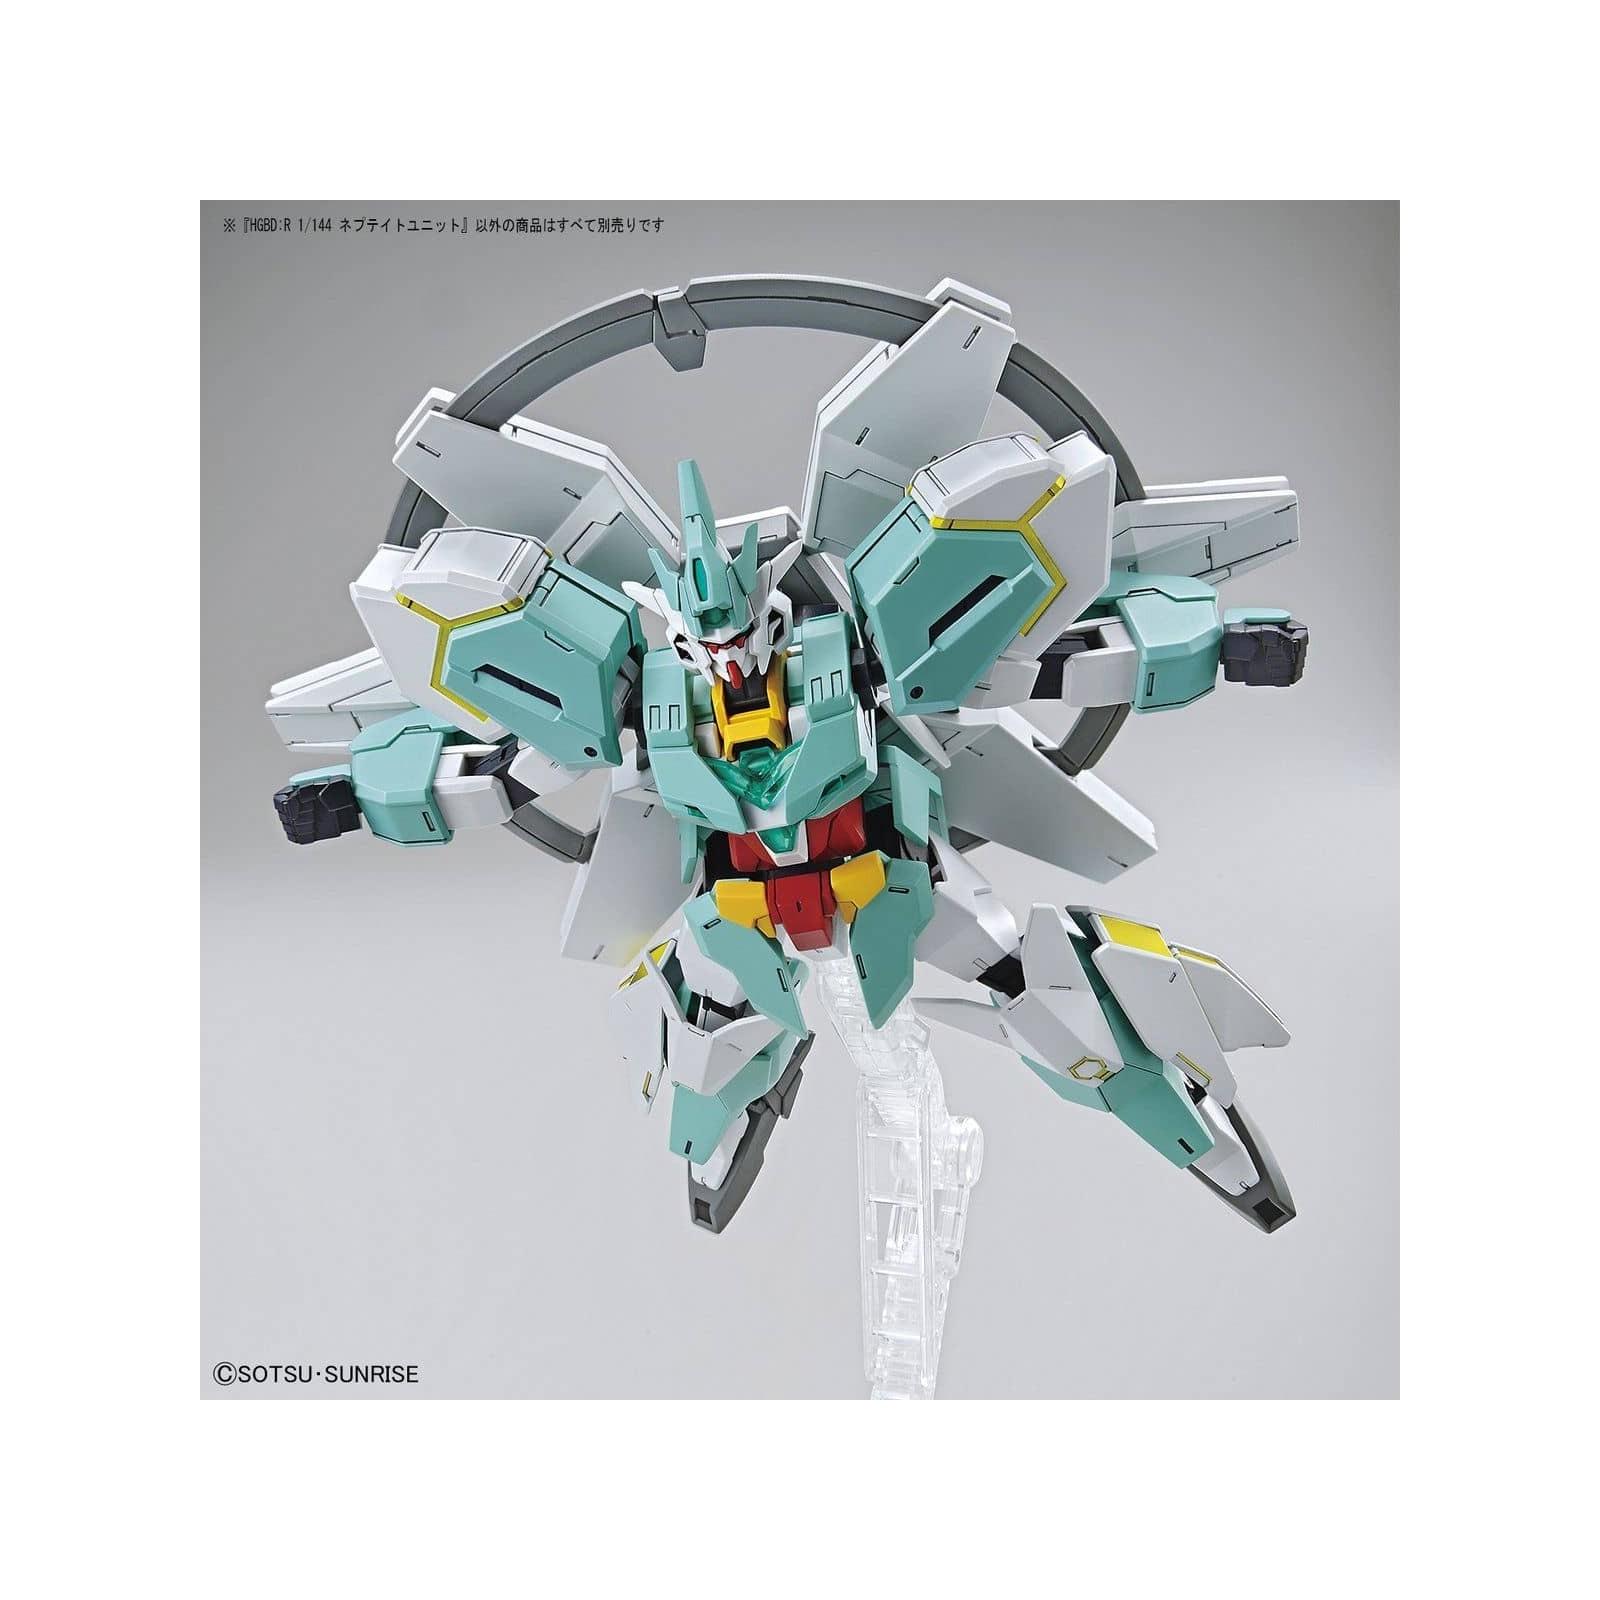 Gundam - HGBD:R - 031 - Nepteight Unit 1/144 Bandai - 2